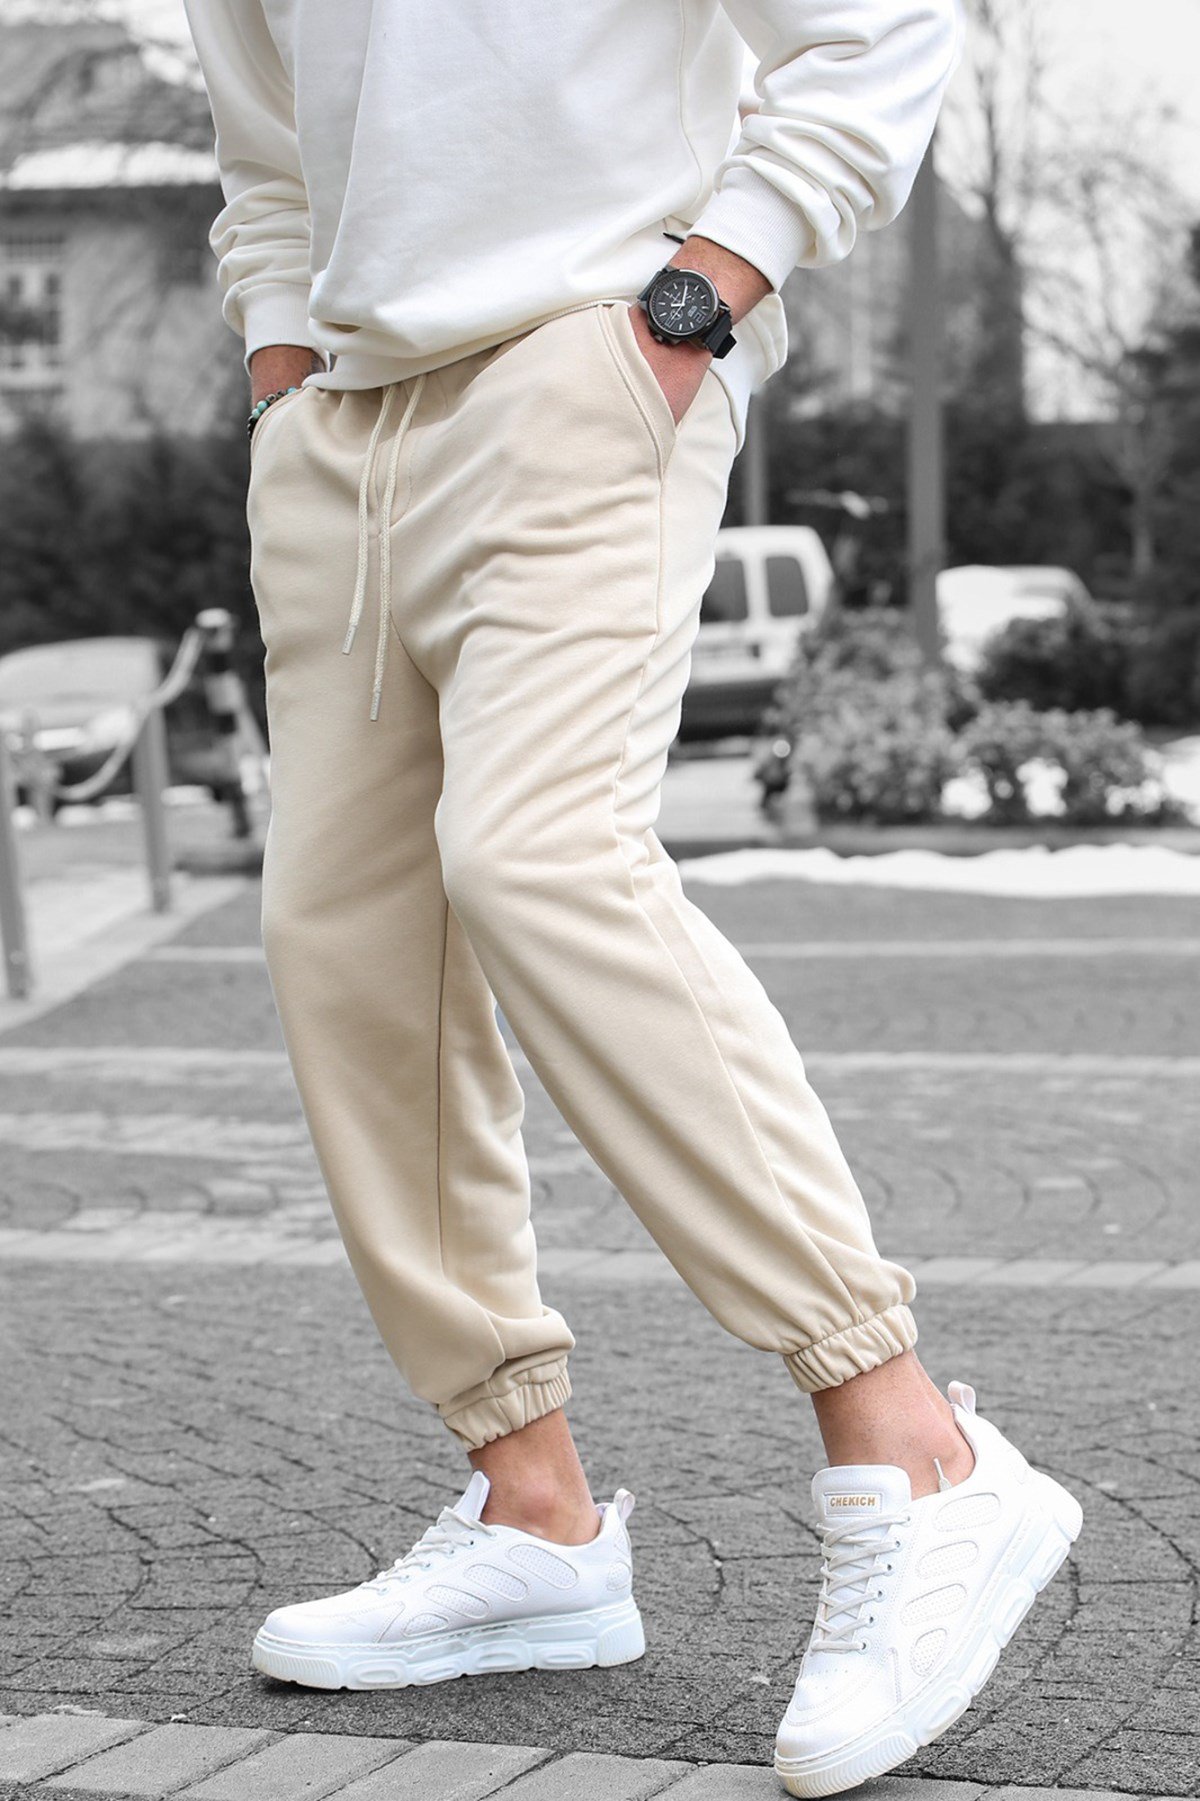 Pantalon de jogging beige #beige #pants #outfit #casual